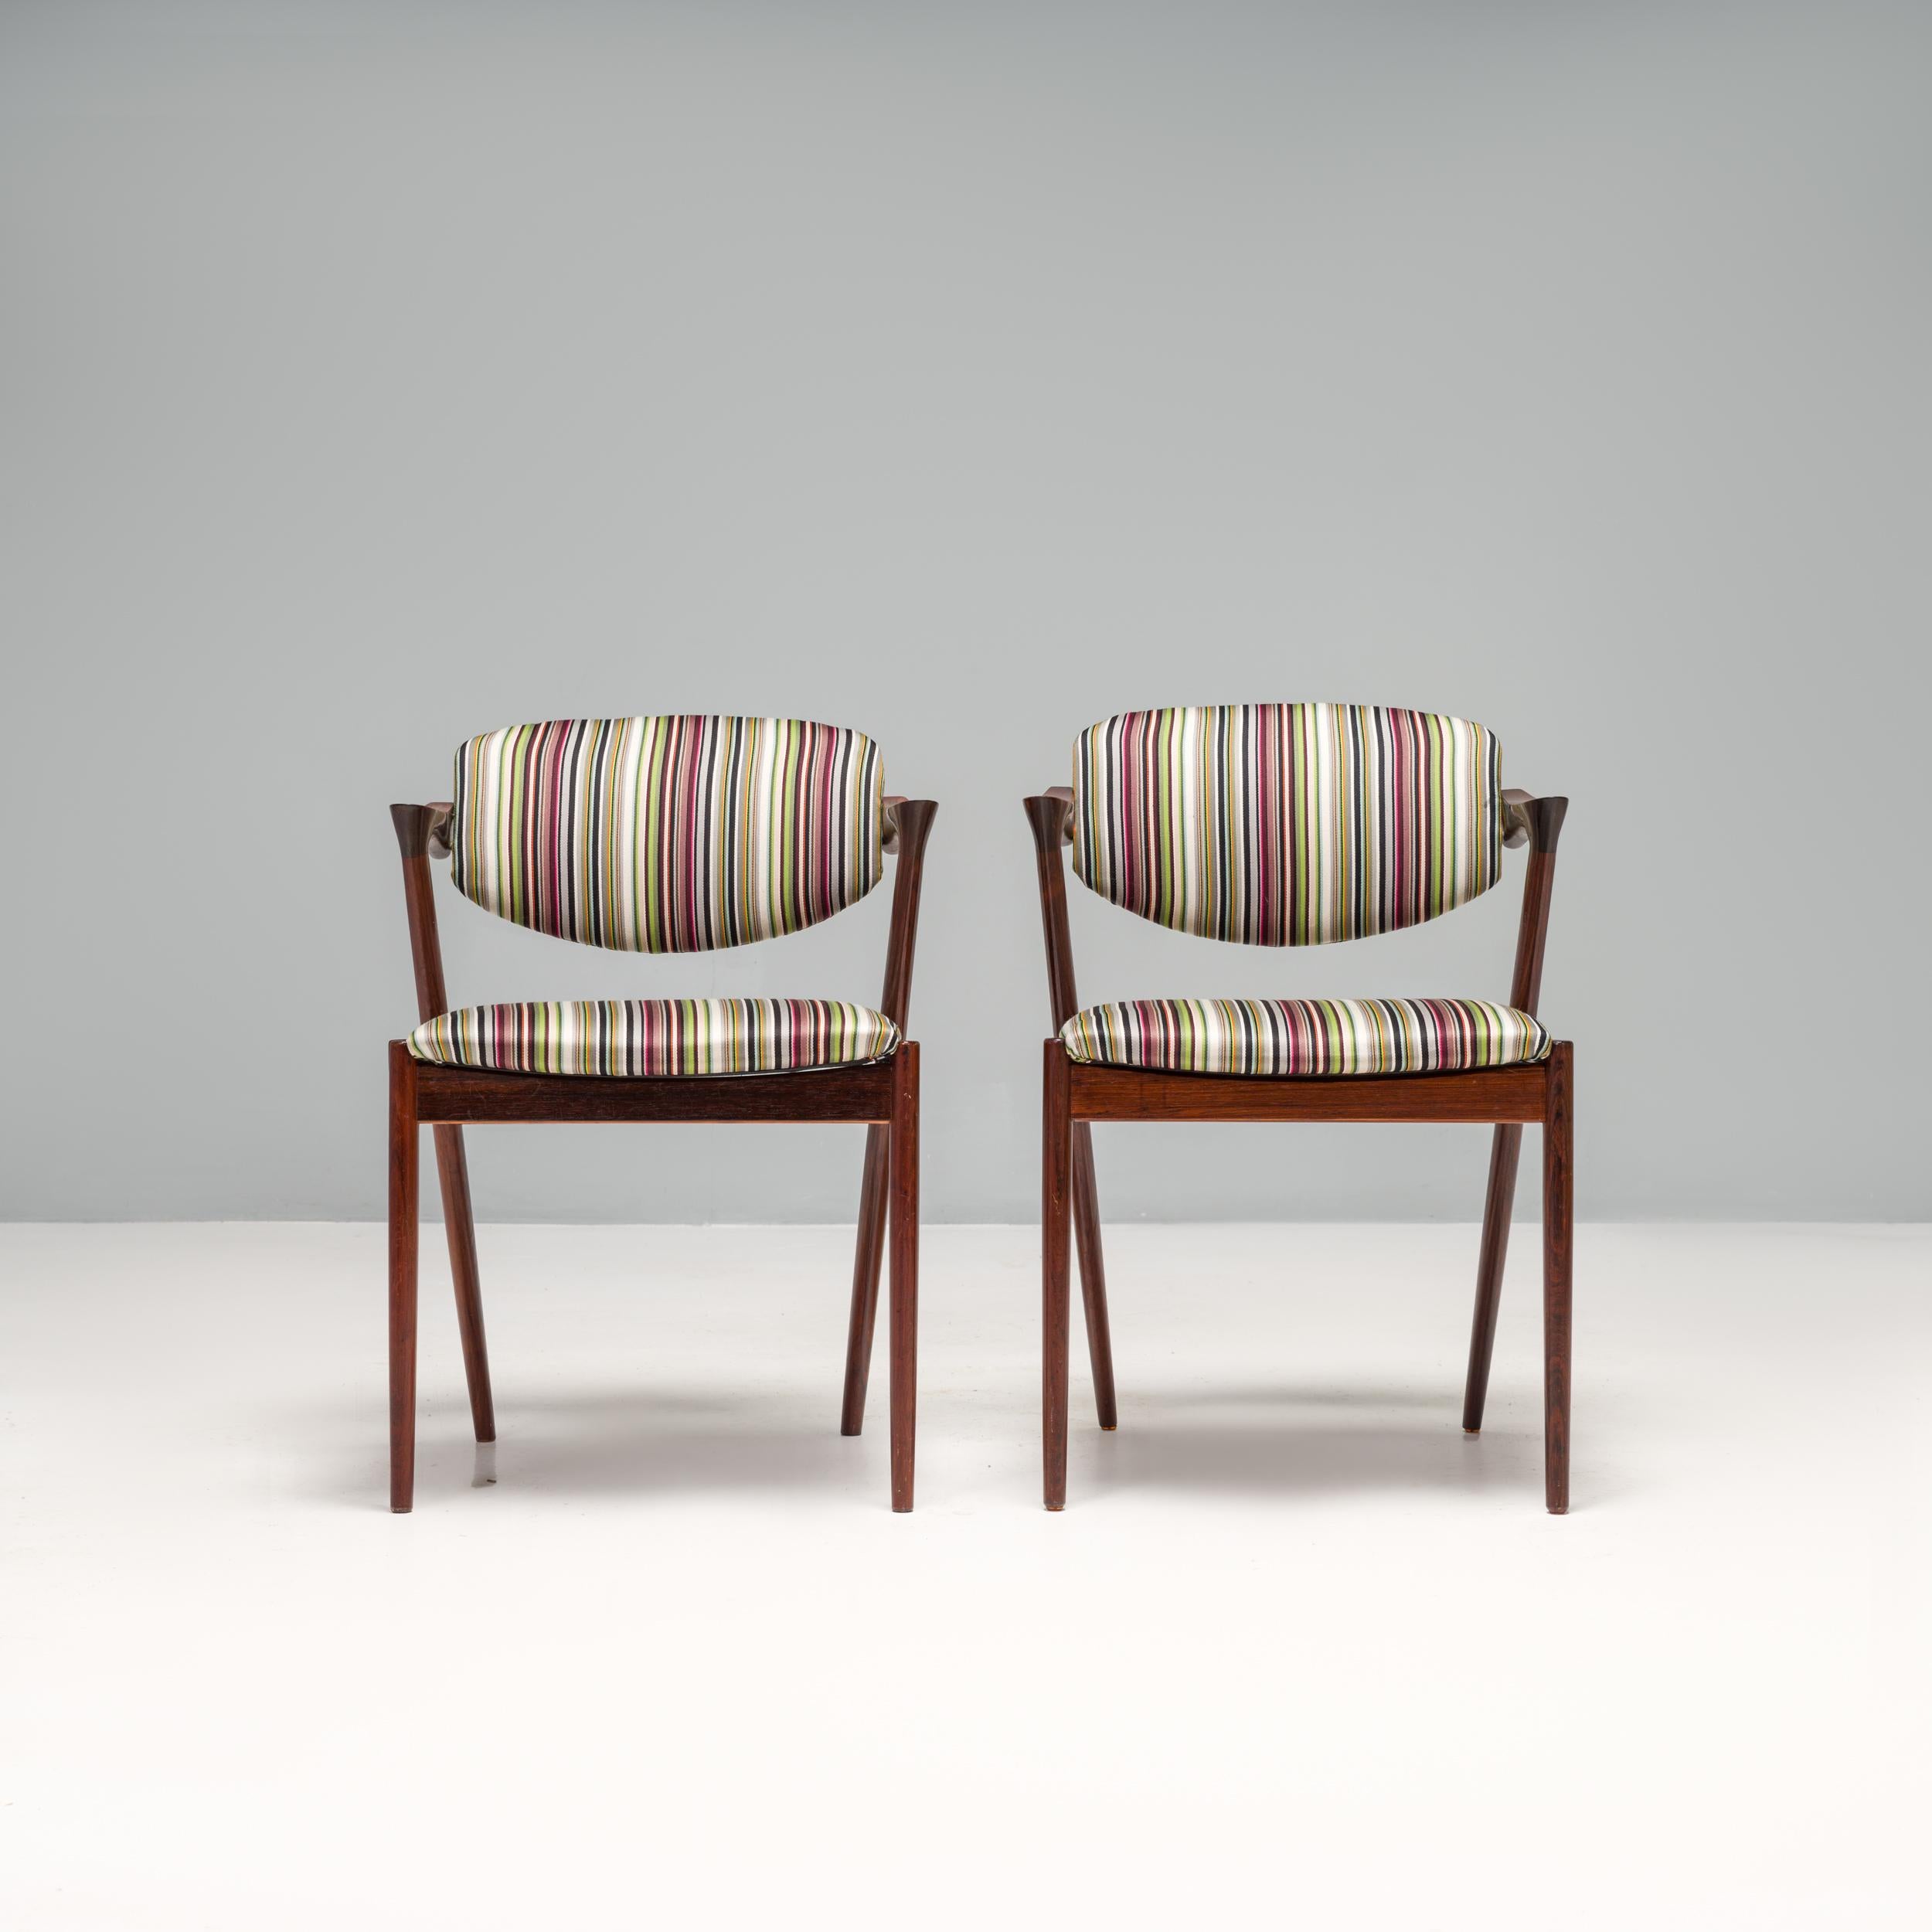 Conçue à l'origine par Kai Kristiansen en 1956 et fabriquée par Schou Andersen Møbelfabrik, la chaise No 42 est l'un des modèles les plus connus du mobilier danois du milieu du siècle.

Construites à partir d'un cadre en bois de rose dans la